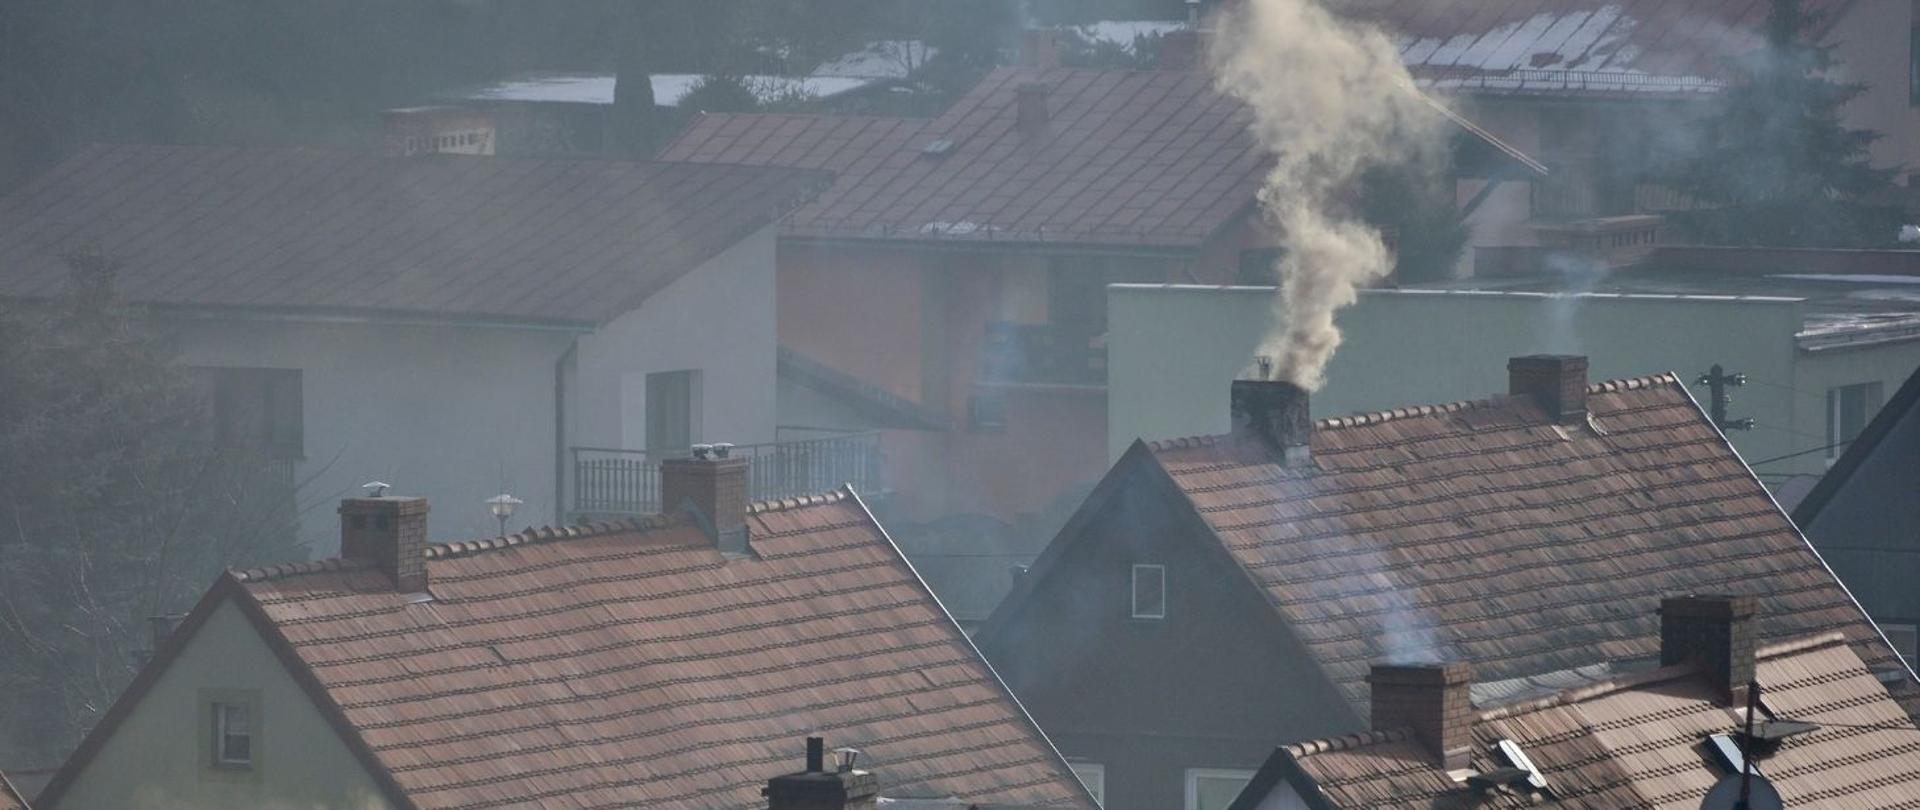 Wiele dachów domów, z których jeden wydaje dym z komina. Dachy mają różne odcienie brązu i szarości, co wskazuje na różne materiały lub stopień zużycia. Widoczne są liczne kominy, ale tylko jeden aktywnie dymi. 